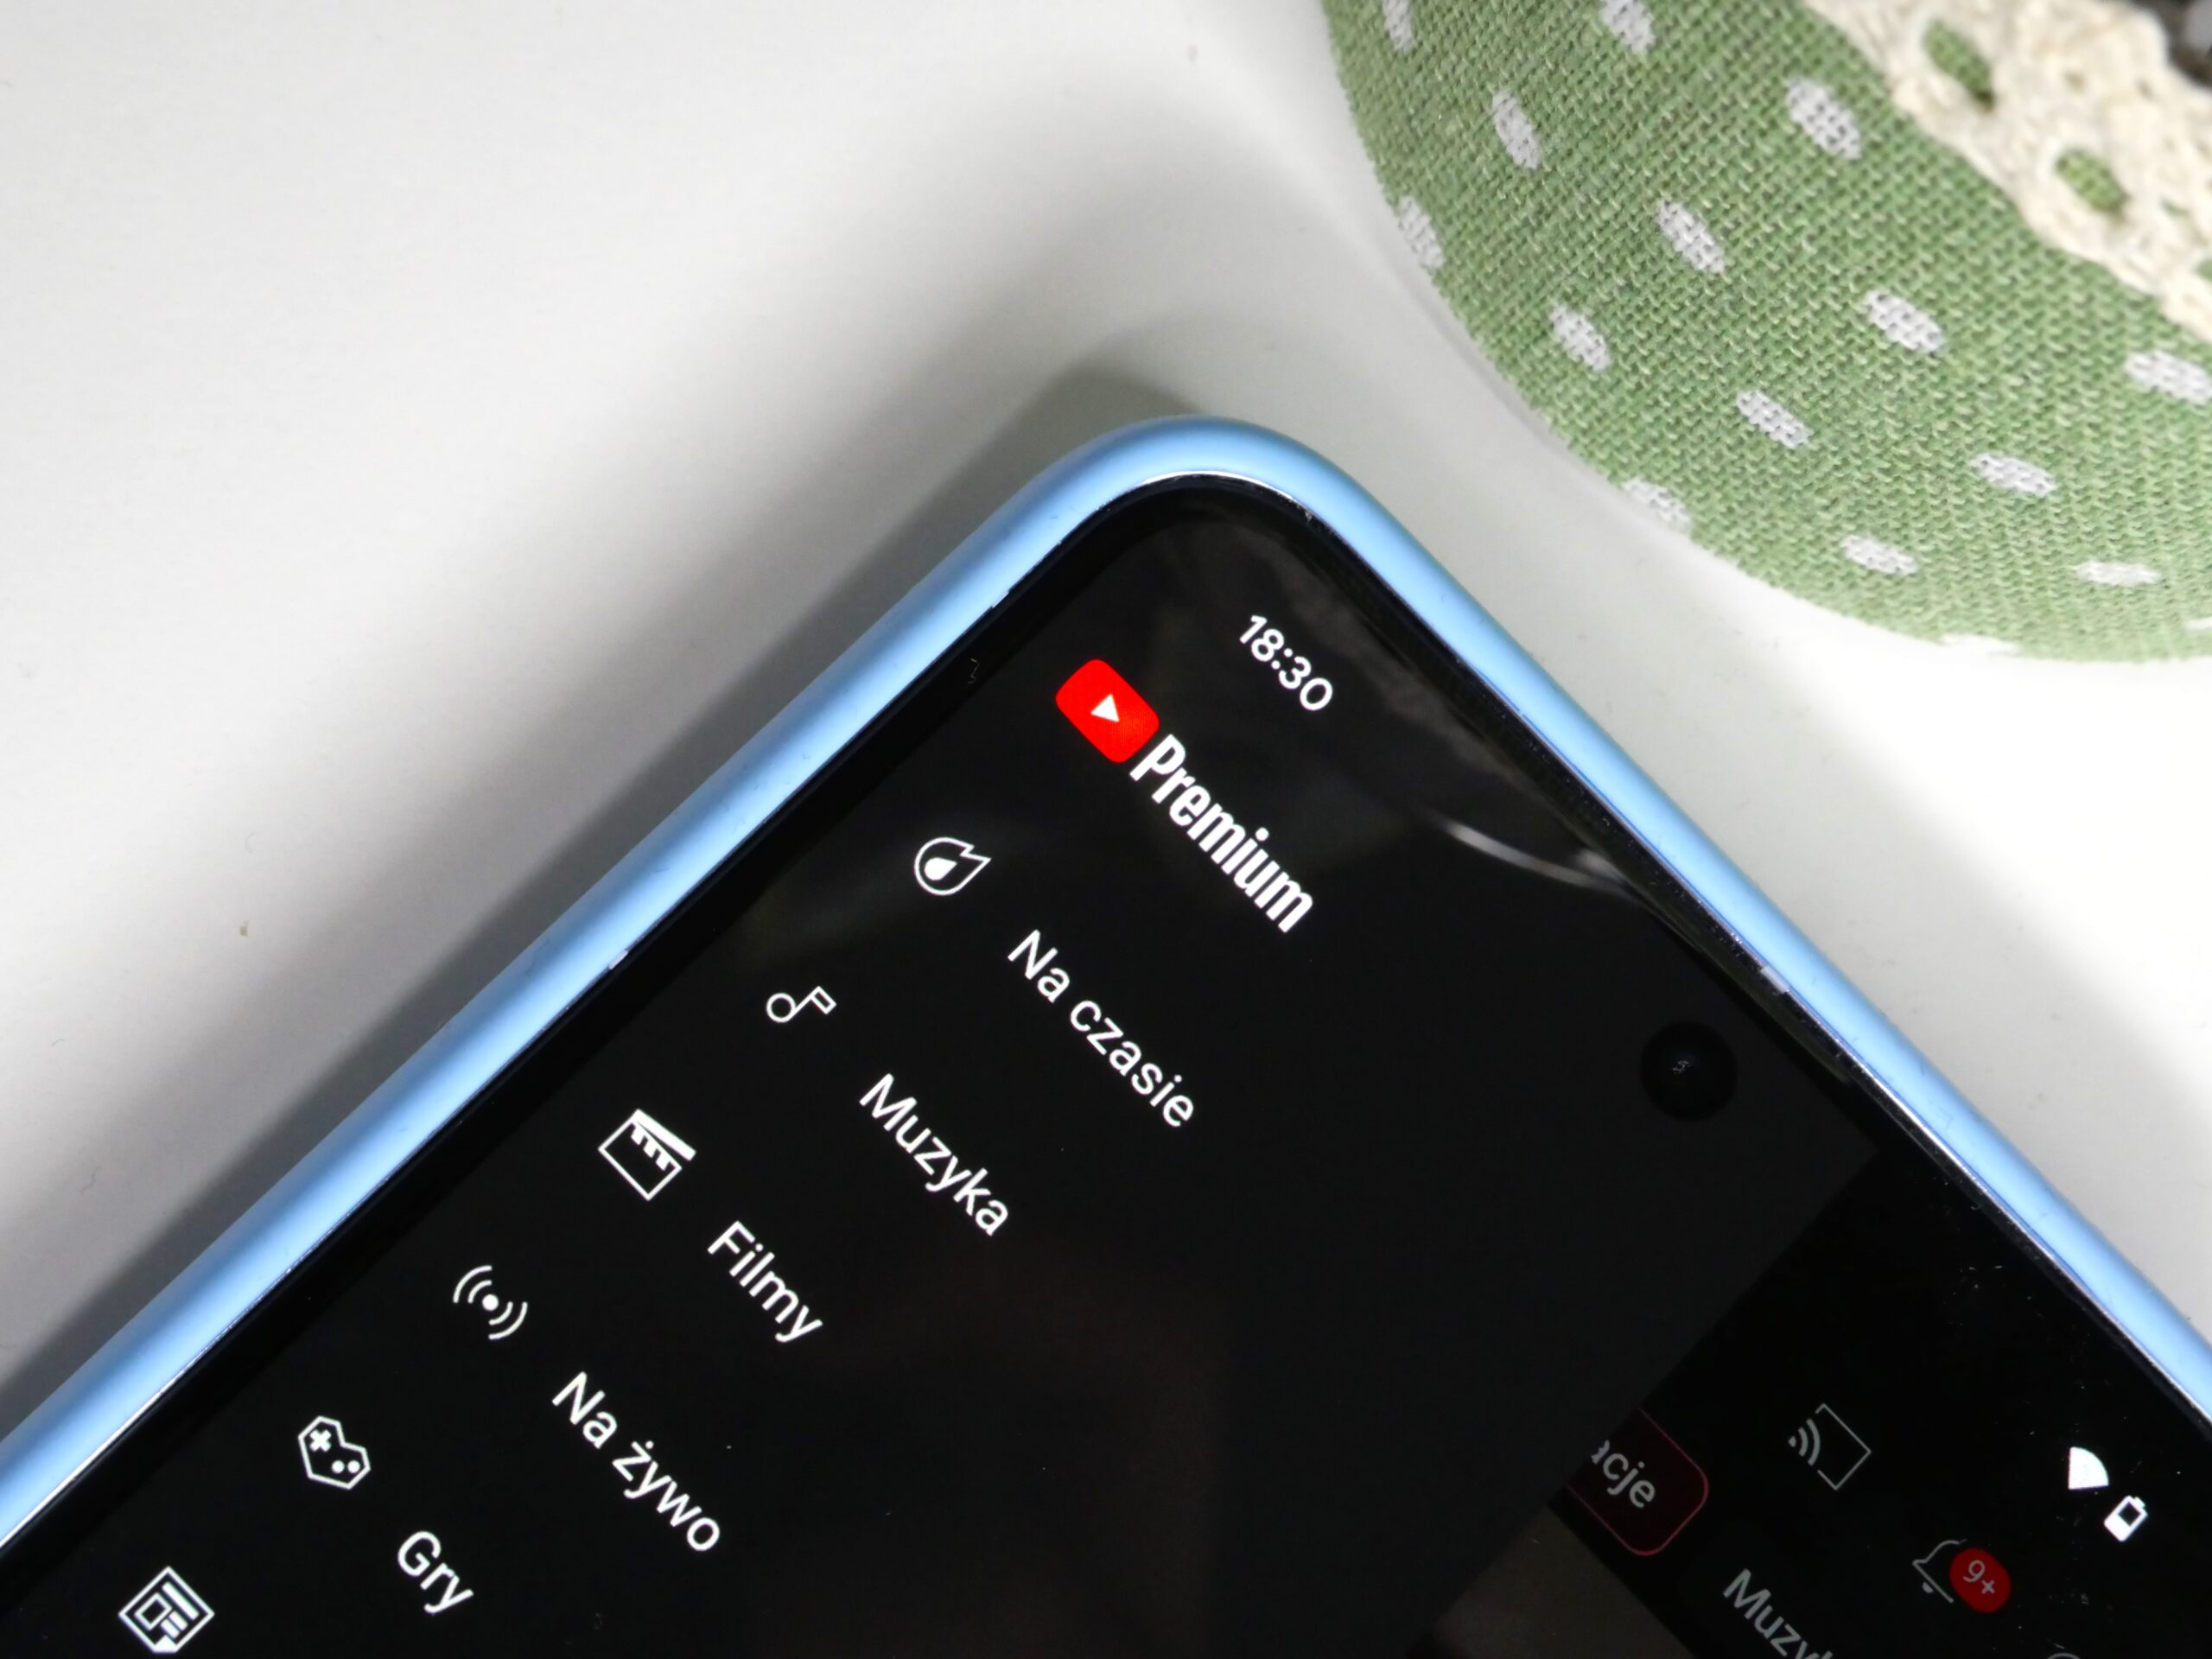 Ekran telefonu z aplikacją YouTube Premium, widoczne ikony kategorii i godzina 18:30.